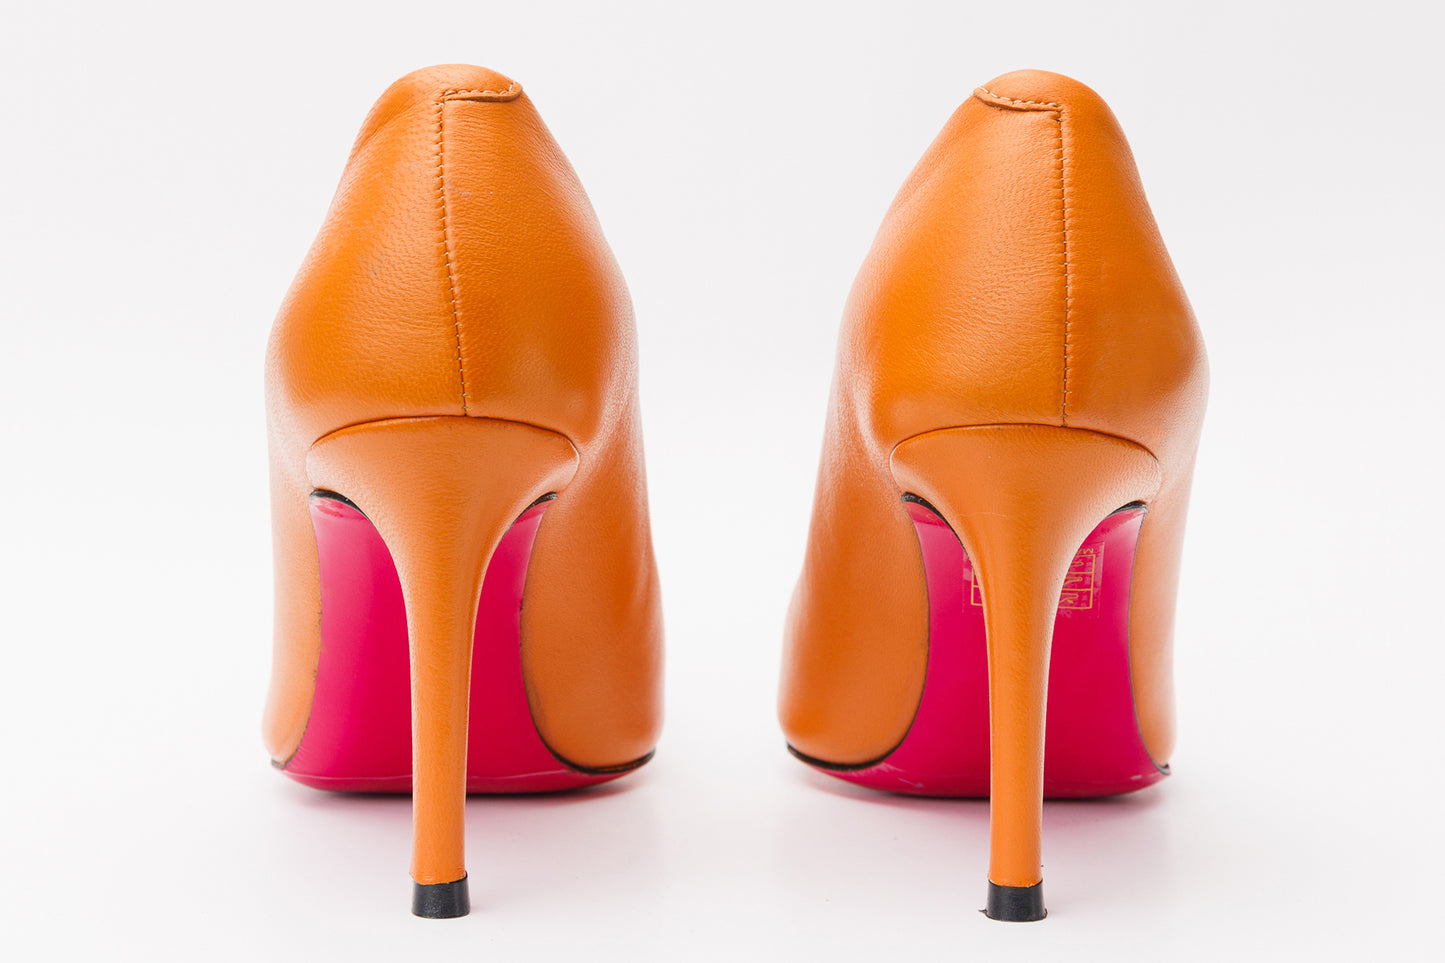 The Maneadero Orange Leather Pump Fuchsia Sole Women Shoe